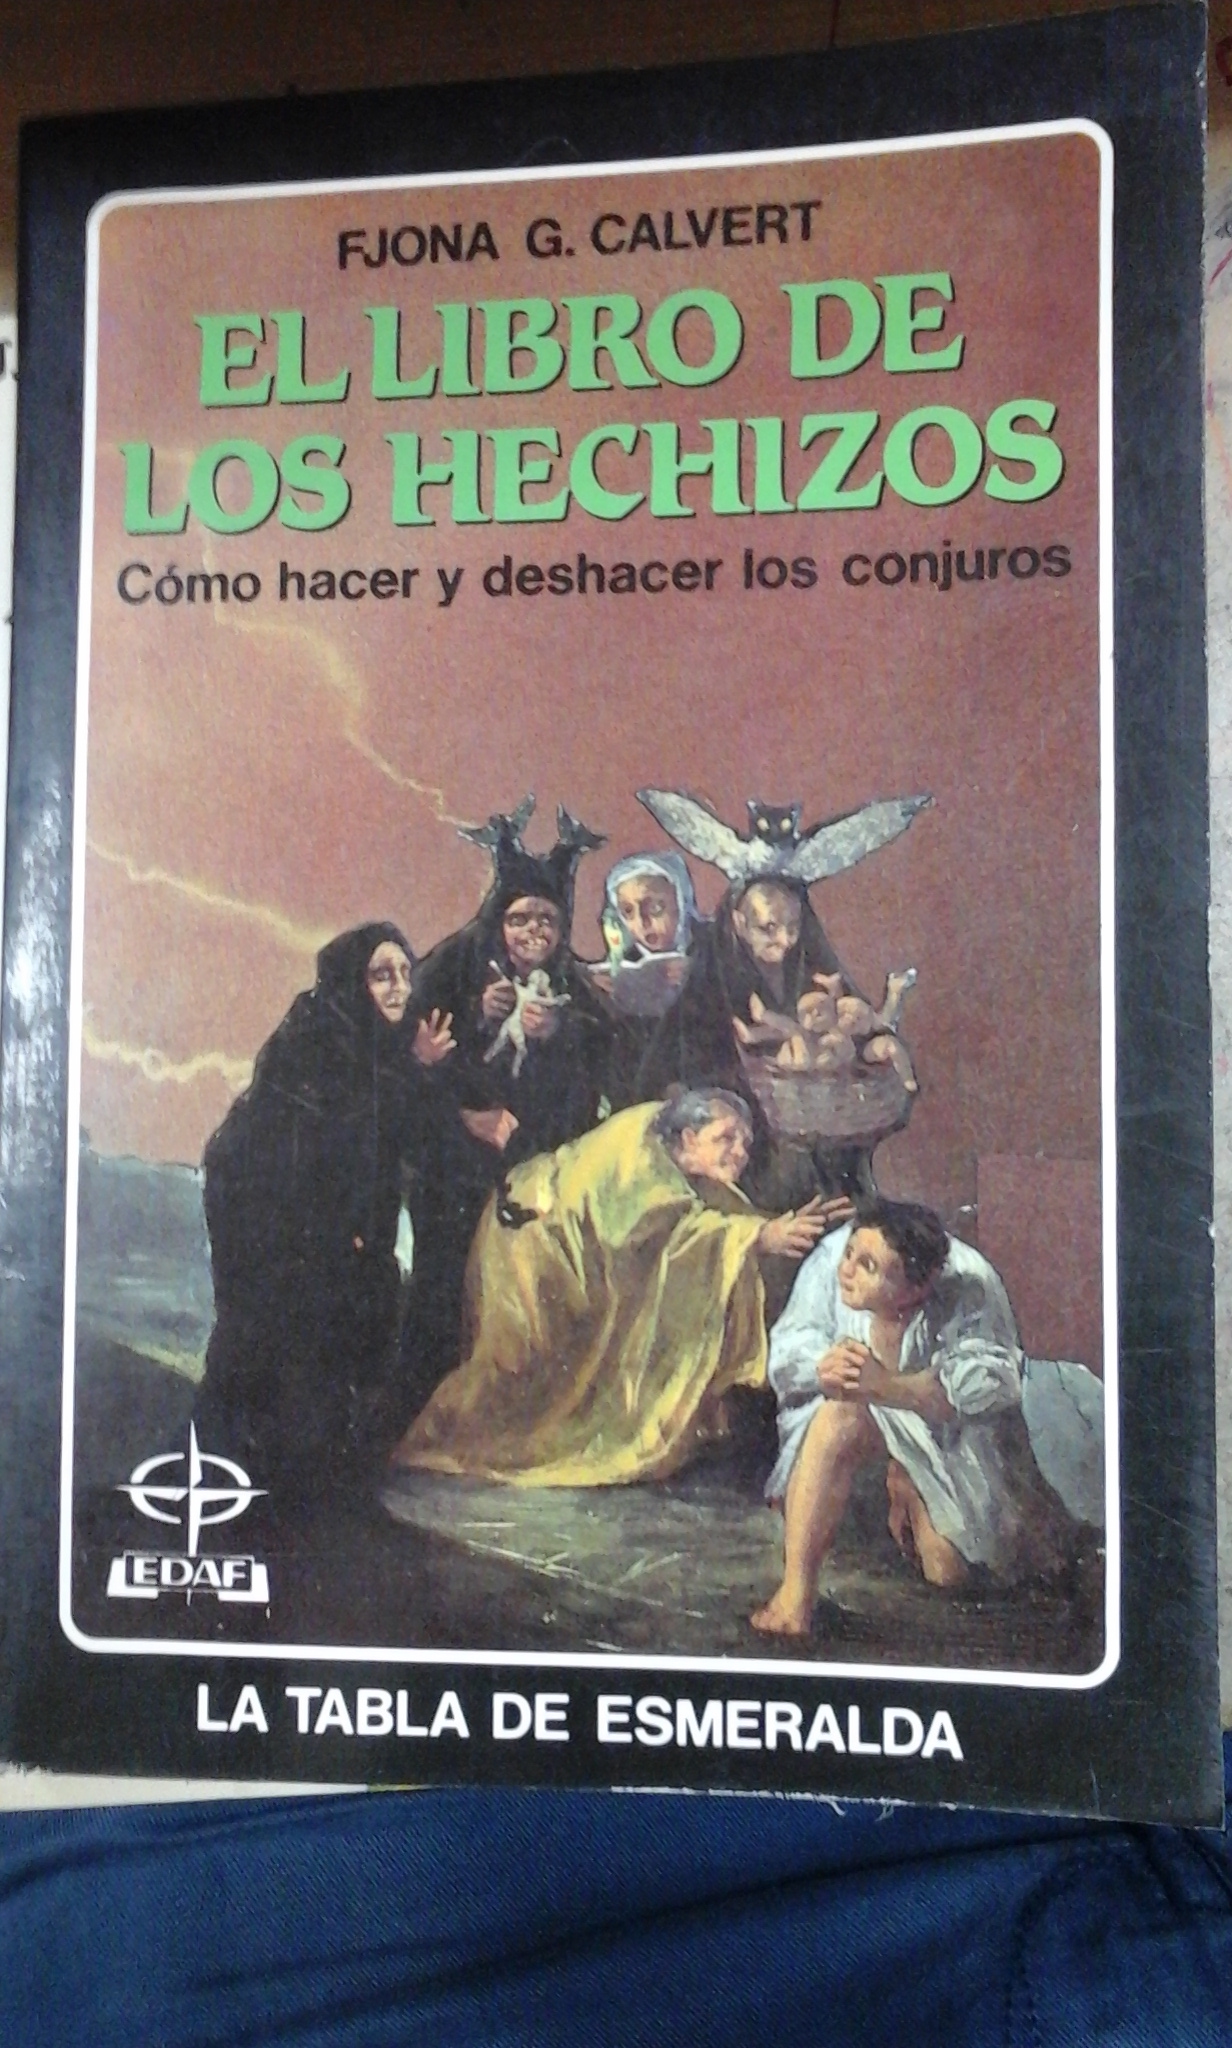 EL LIBRO DE LOS HECHIZOS. Cómo hacer y deshacer conjuros (Madrid, 1989) - Fjona G. Calvert